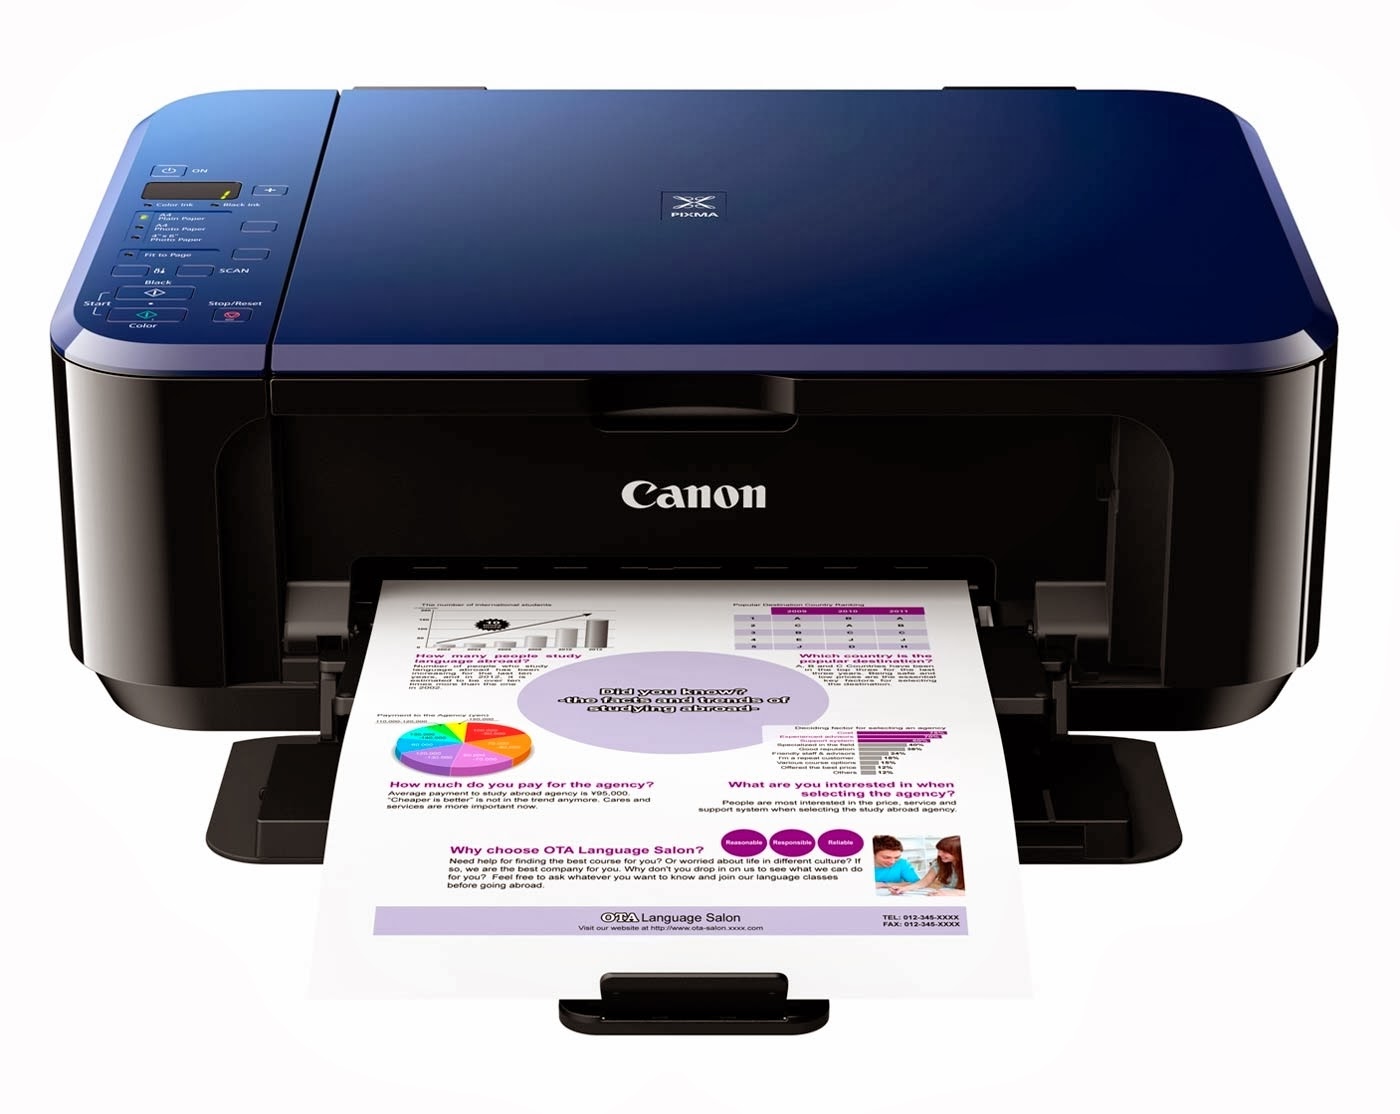 Canon Pixma Printer Setup - Canan printer : Canon PIXMA printer